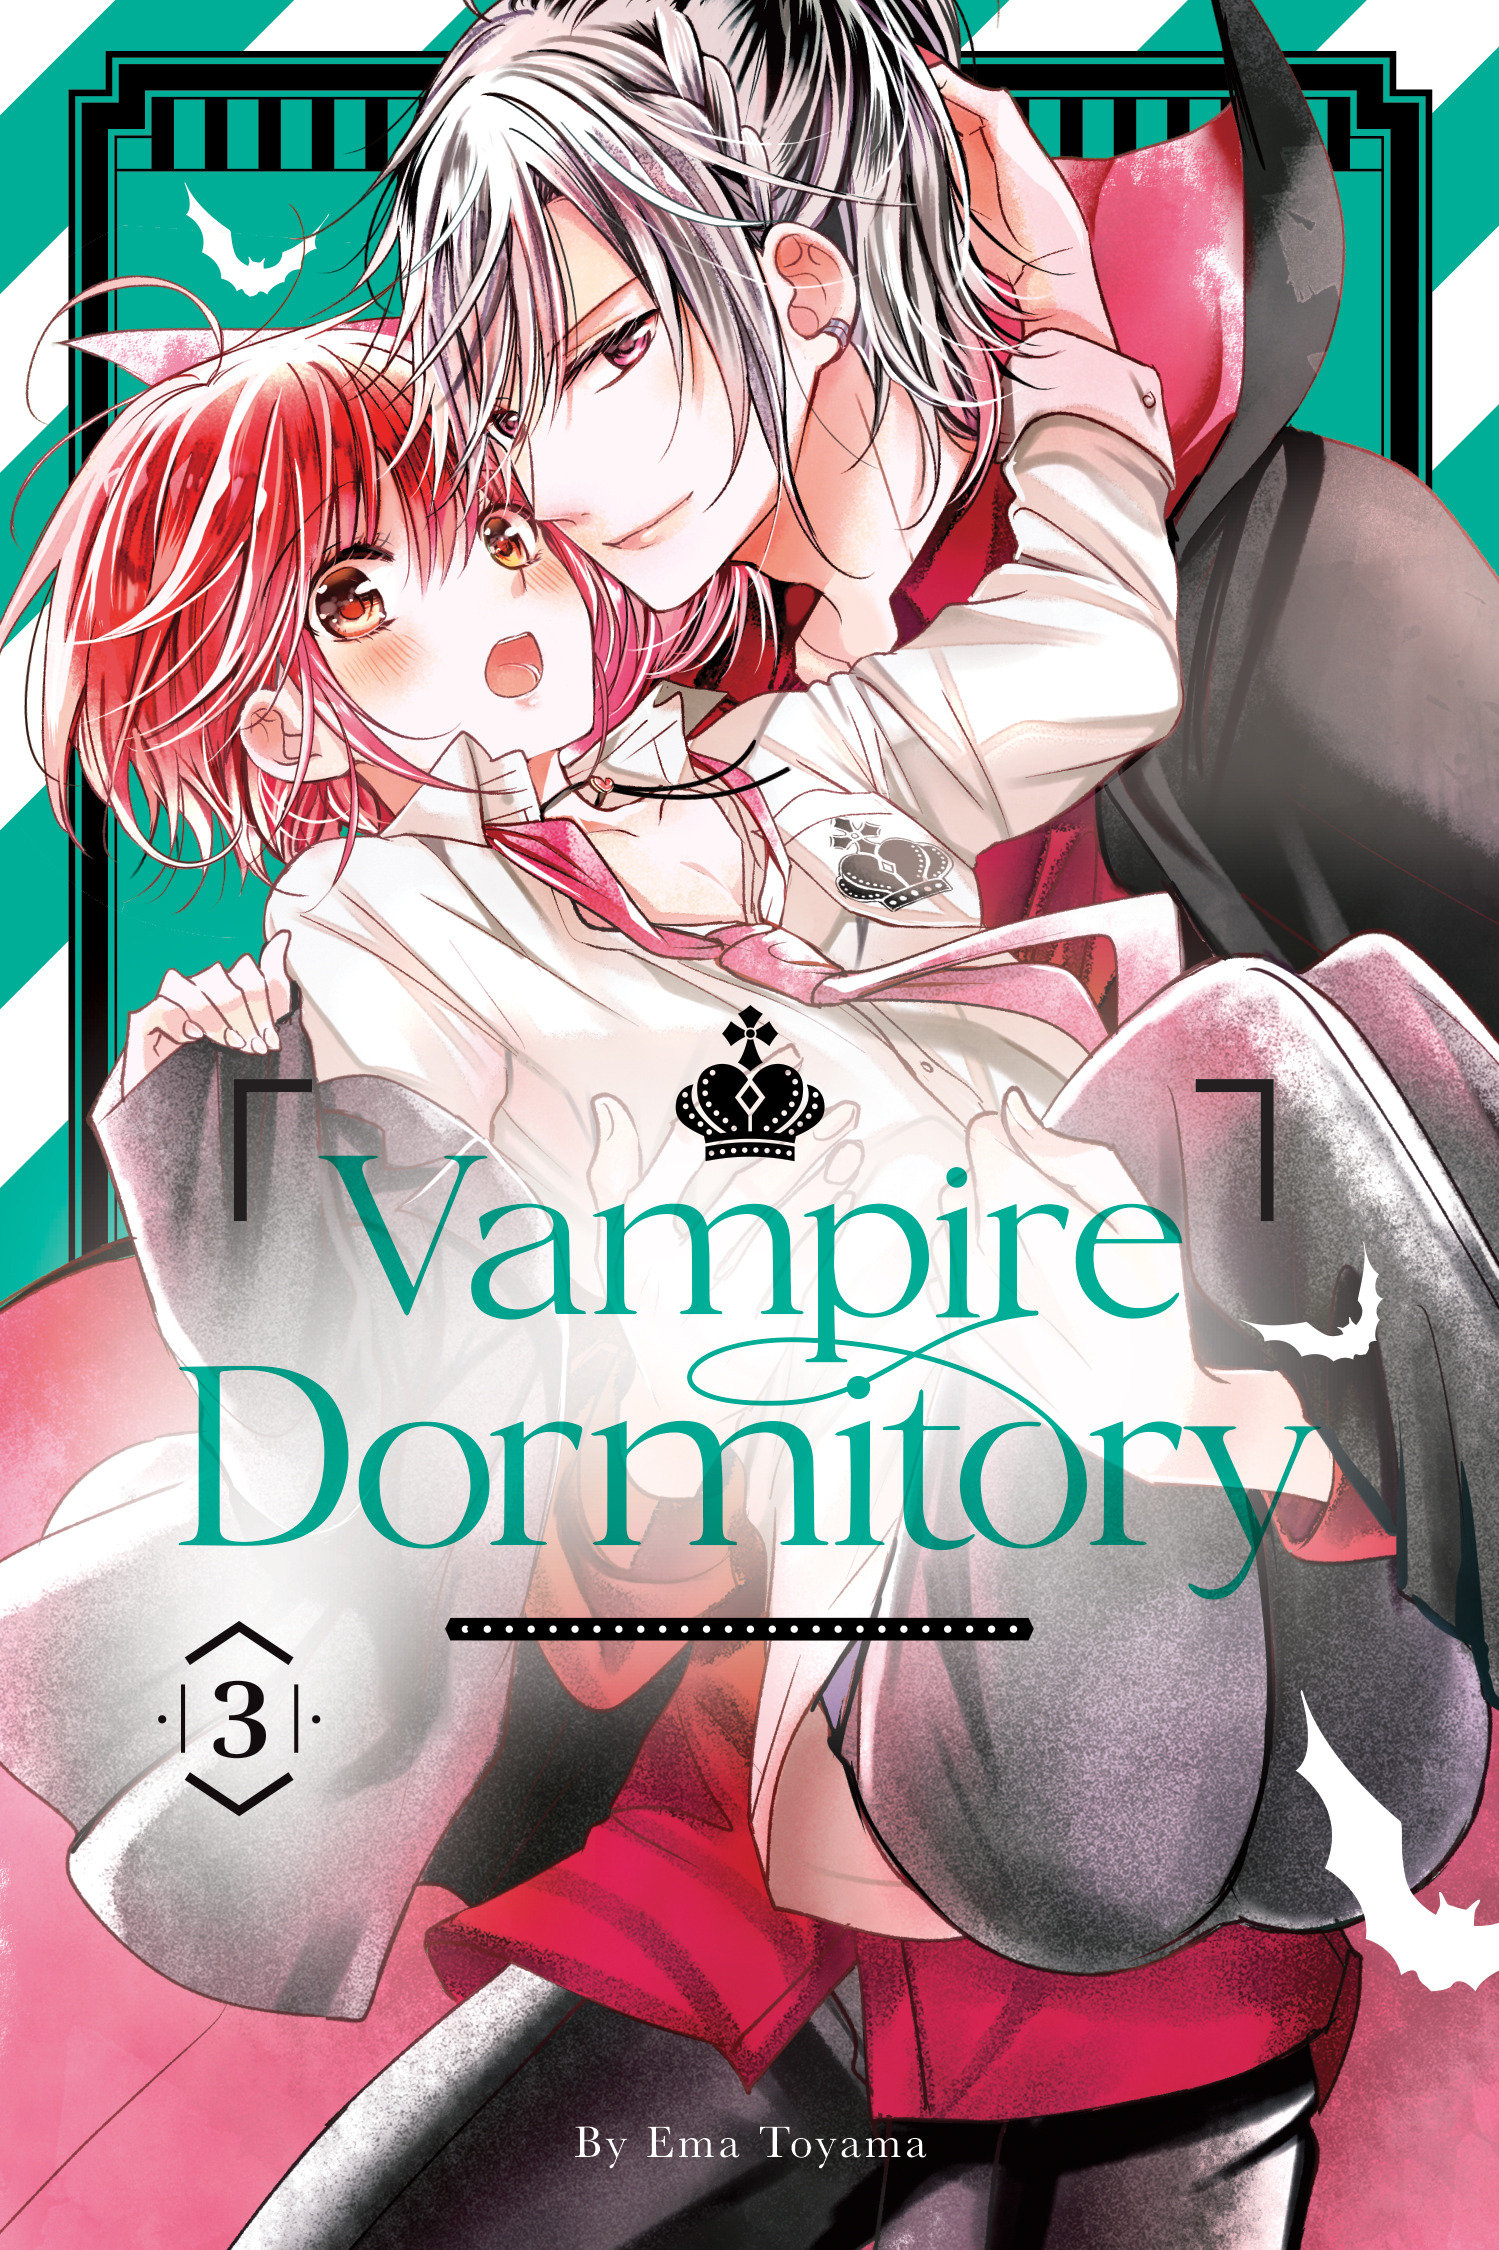 Vampire Dormitory Manga Volume 3